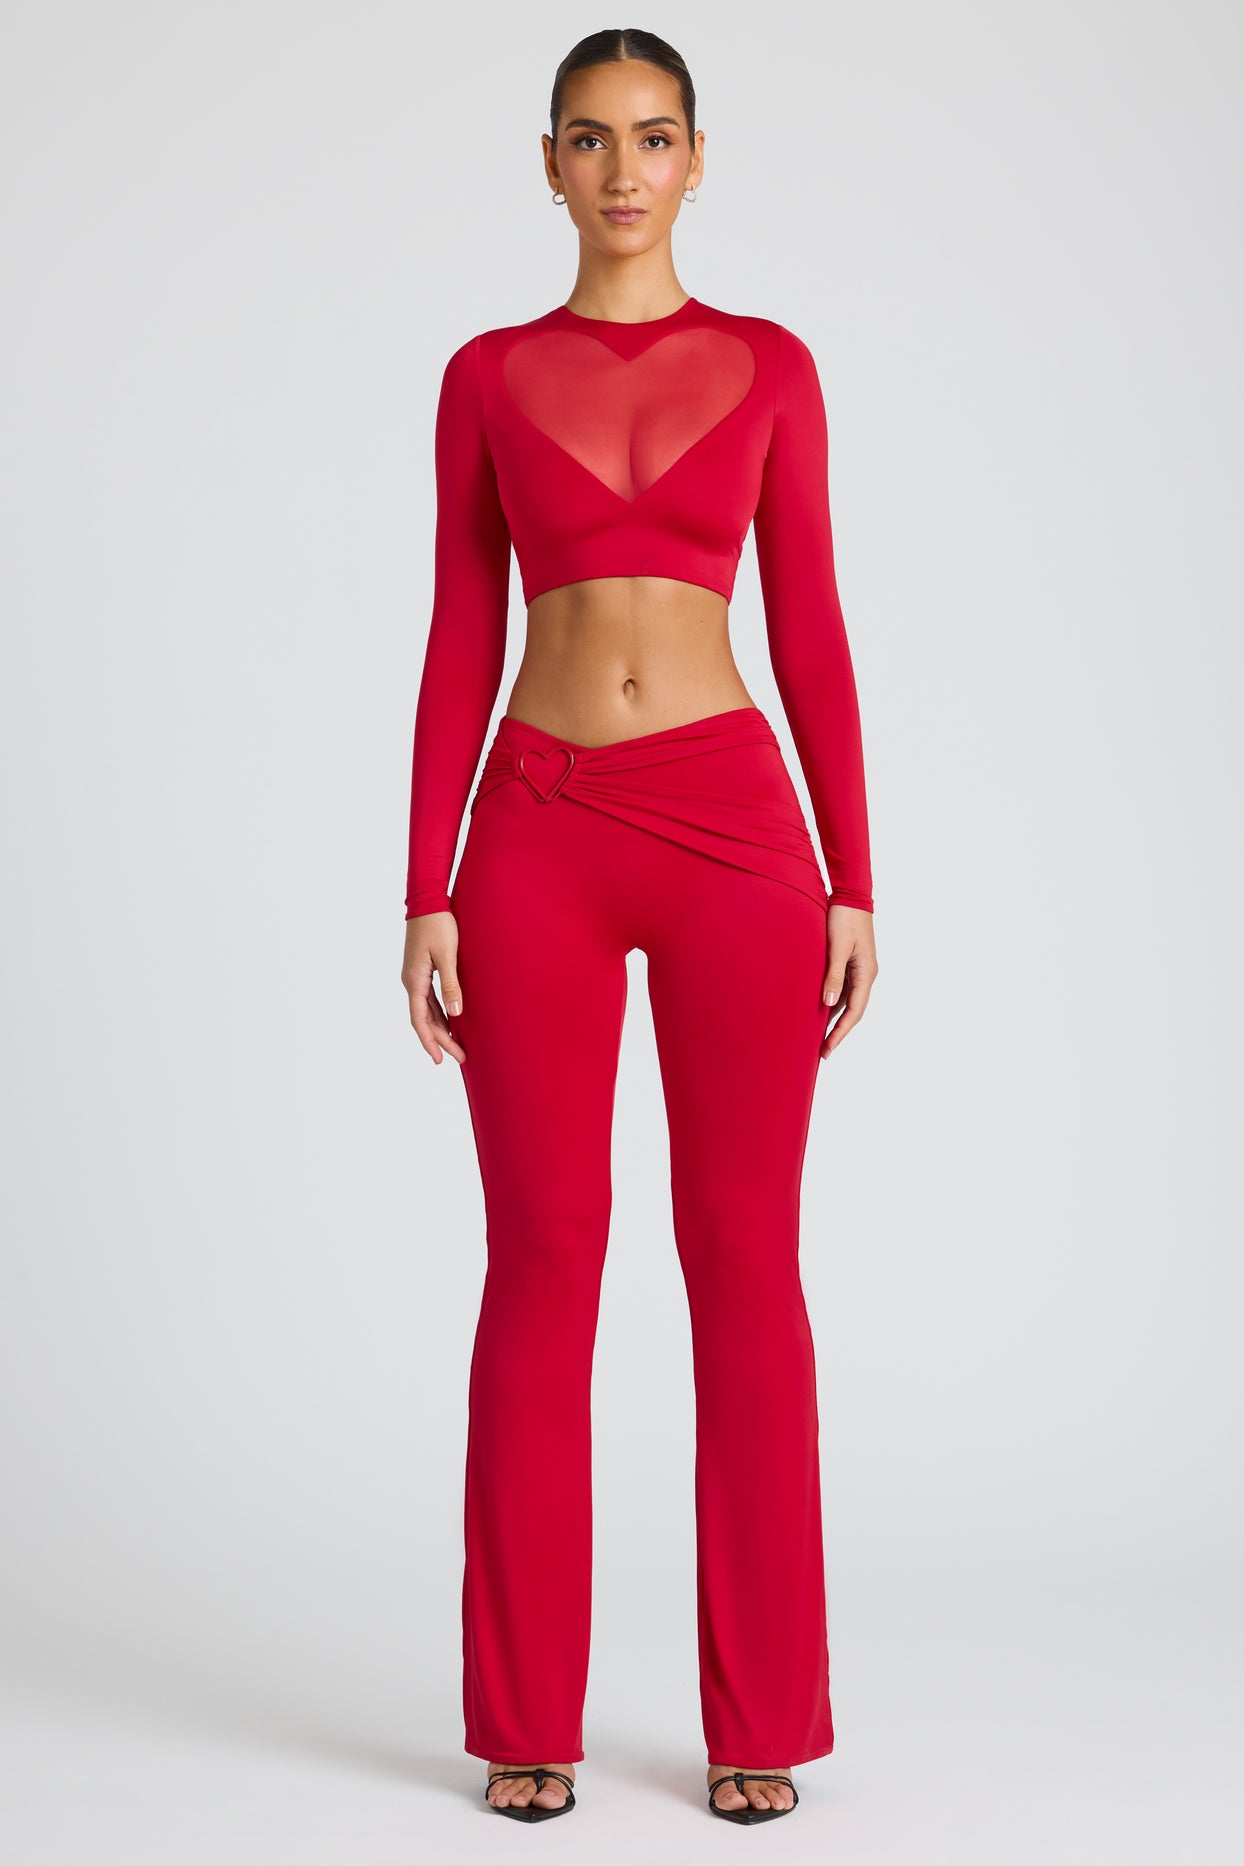 Pantalon droit taille haute avec détail drapé, rouge feu